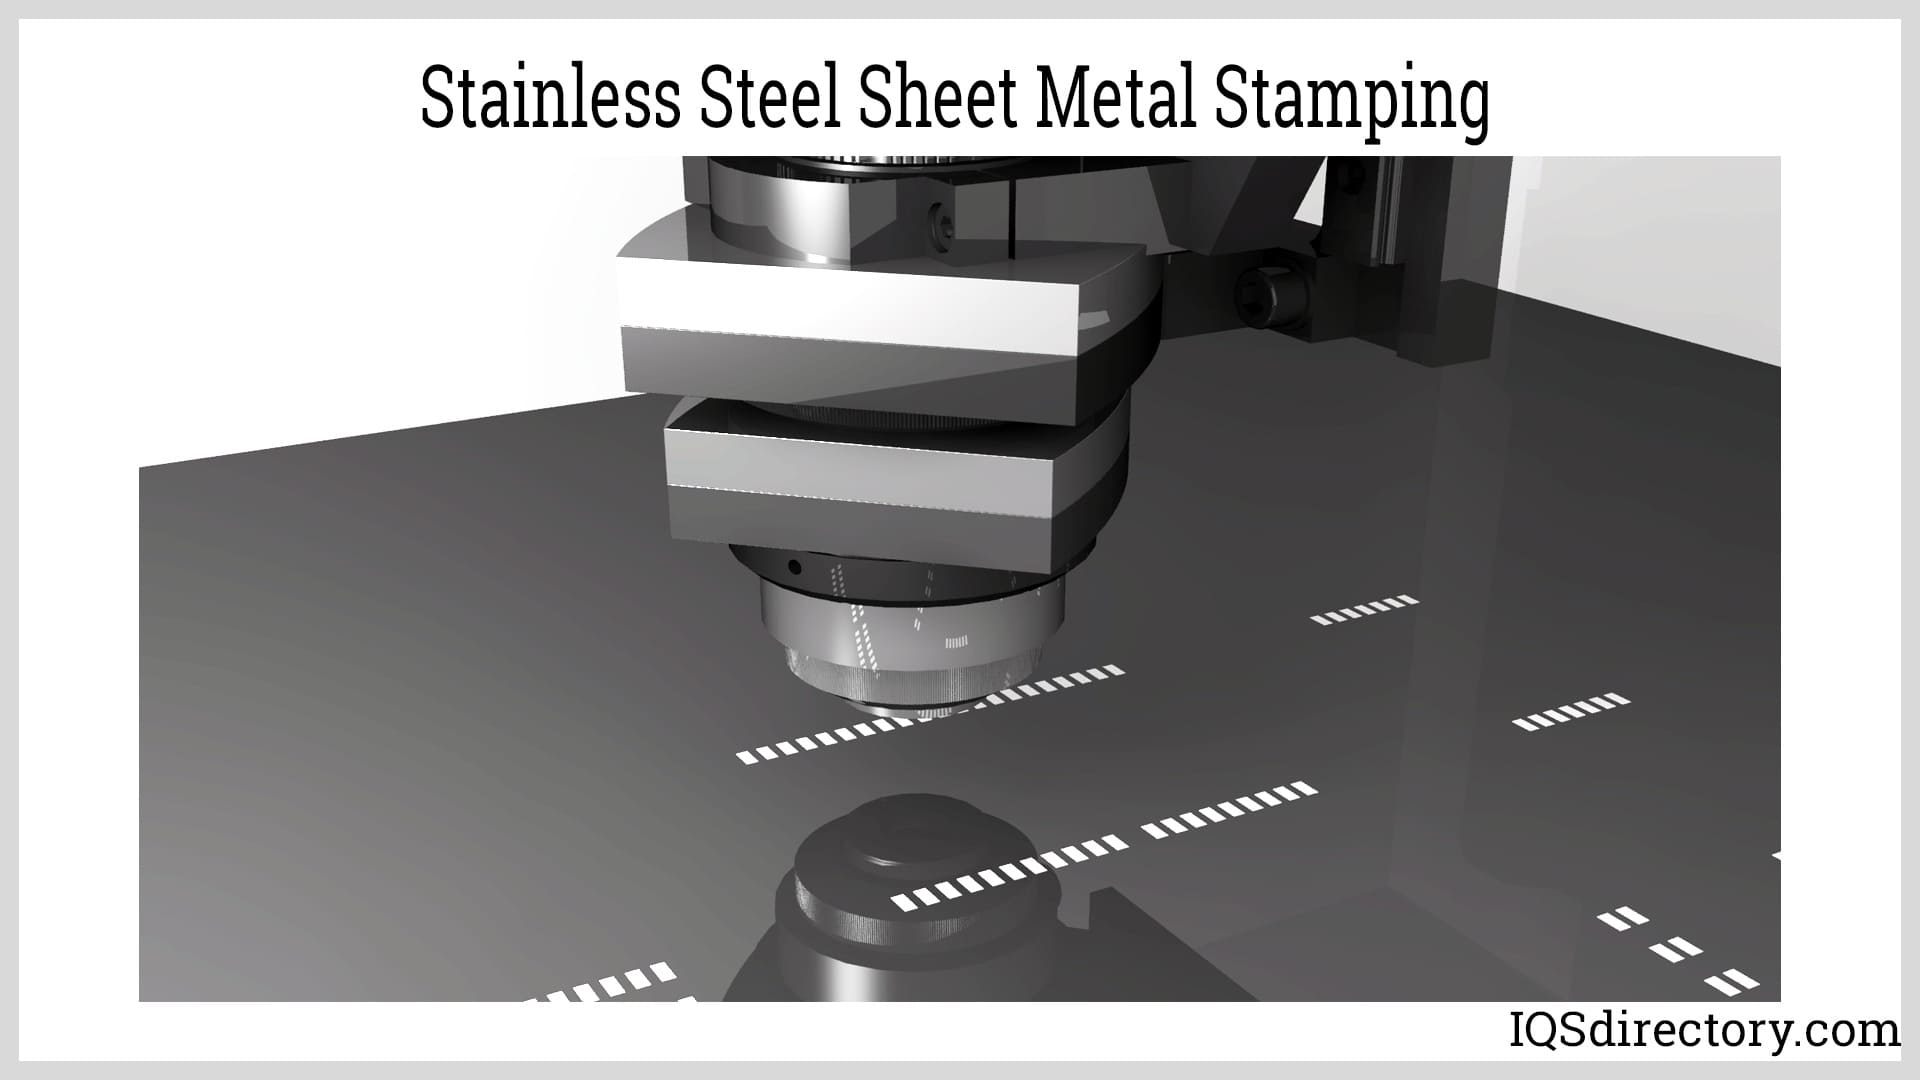 Stainless steel Sheet Metal Stamping